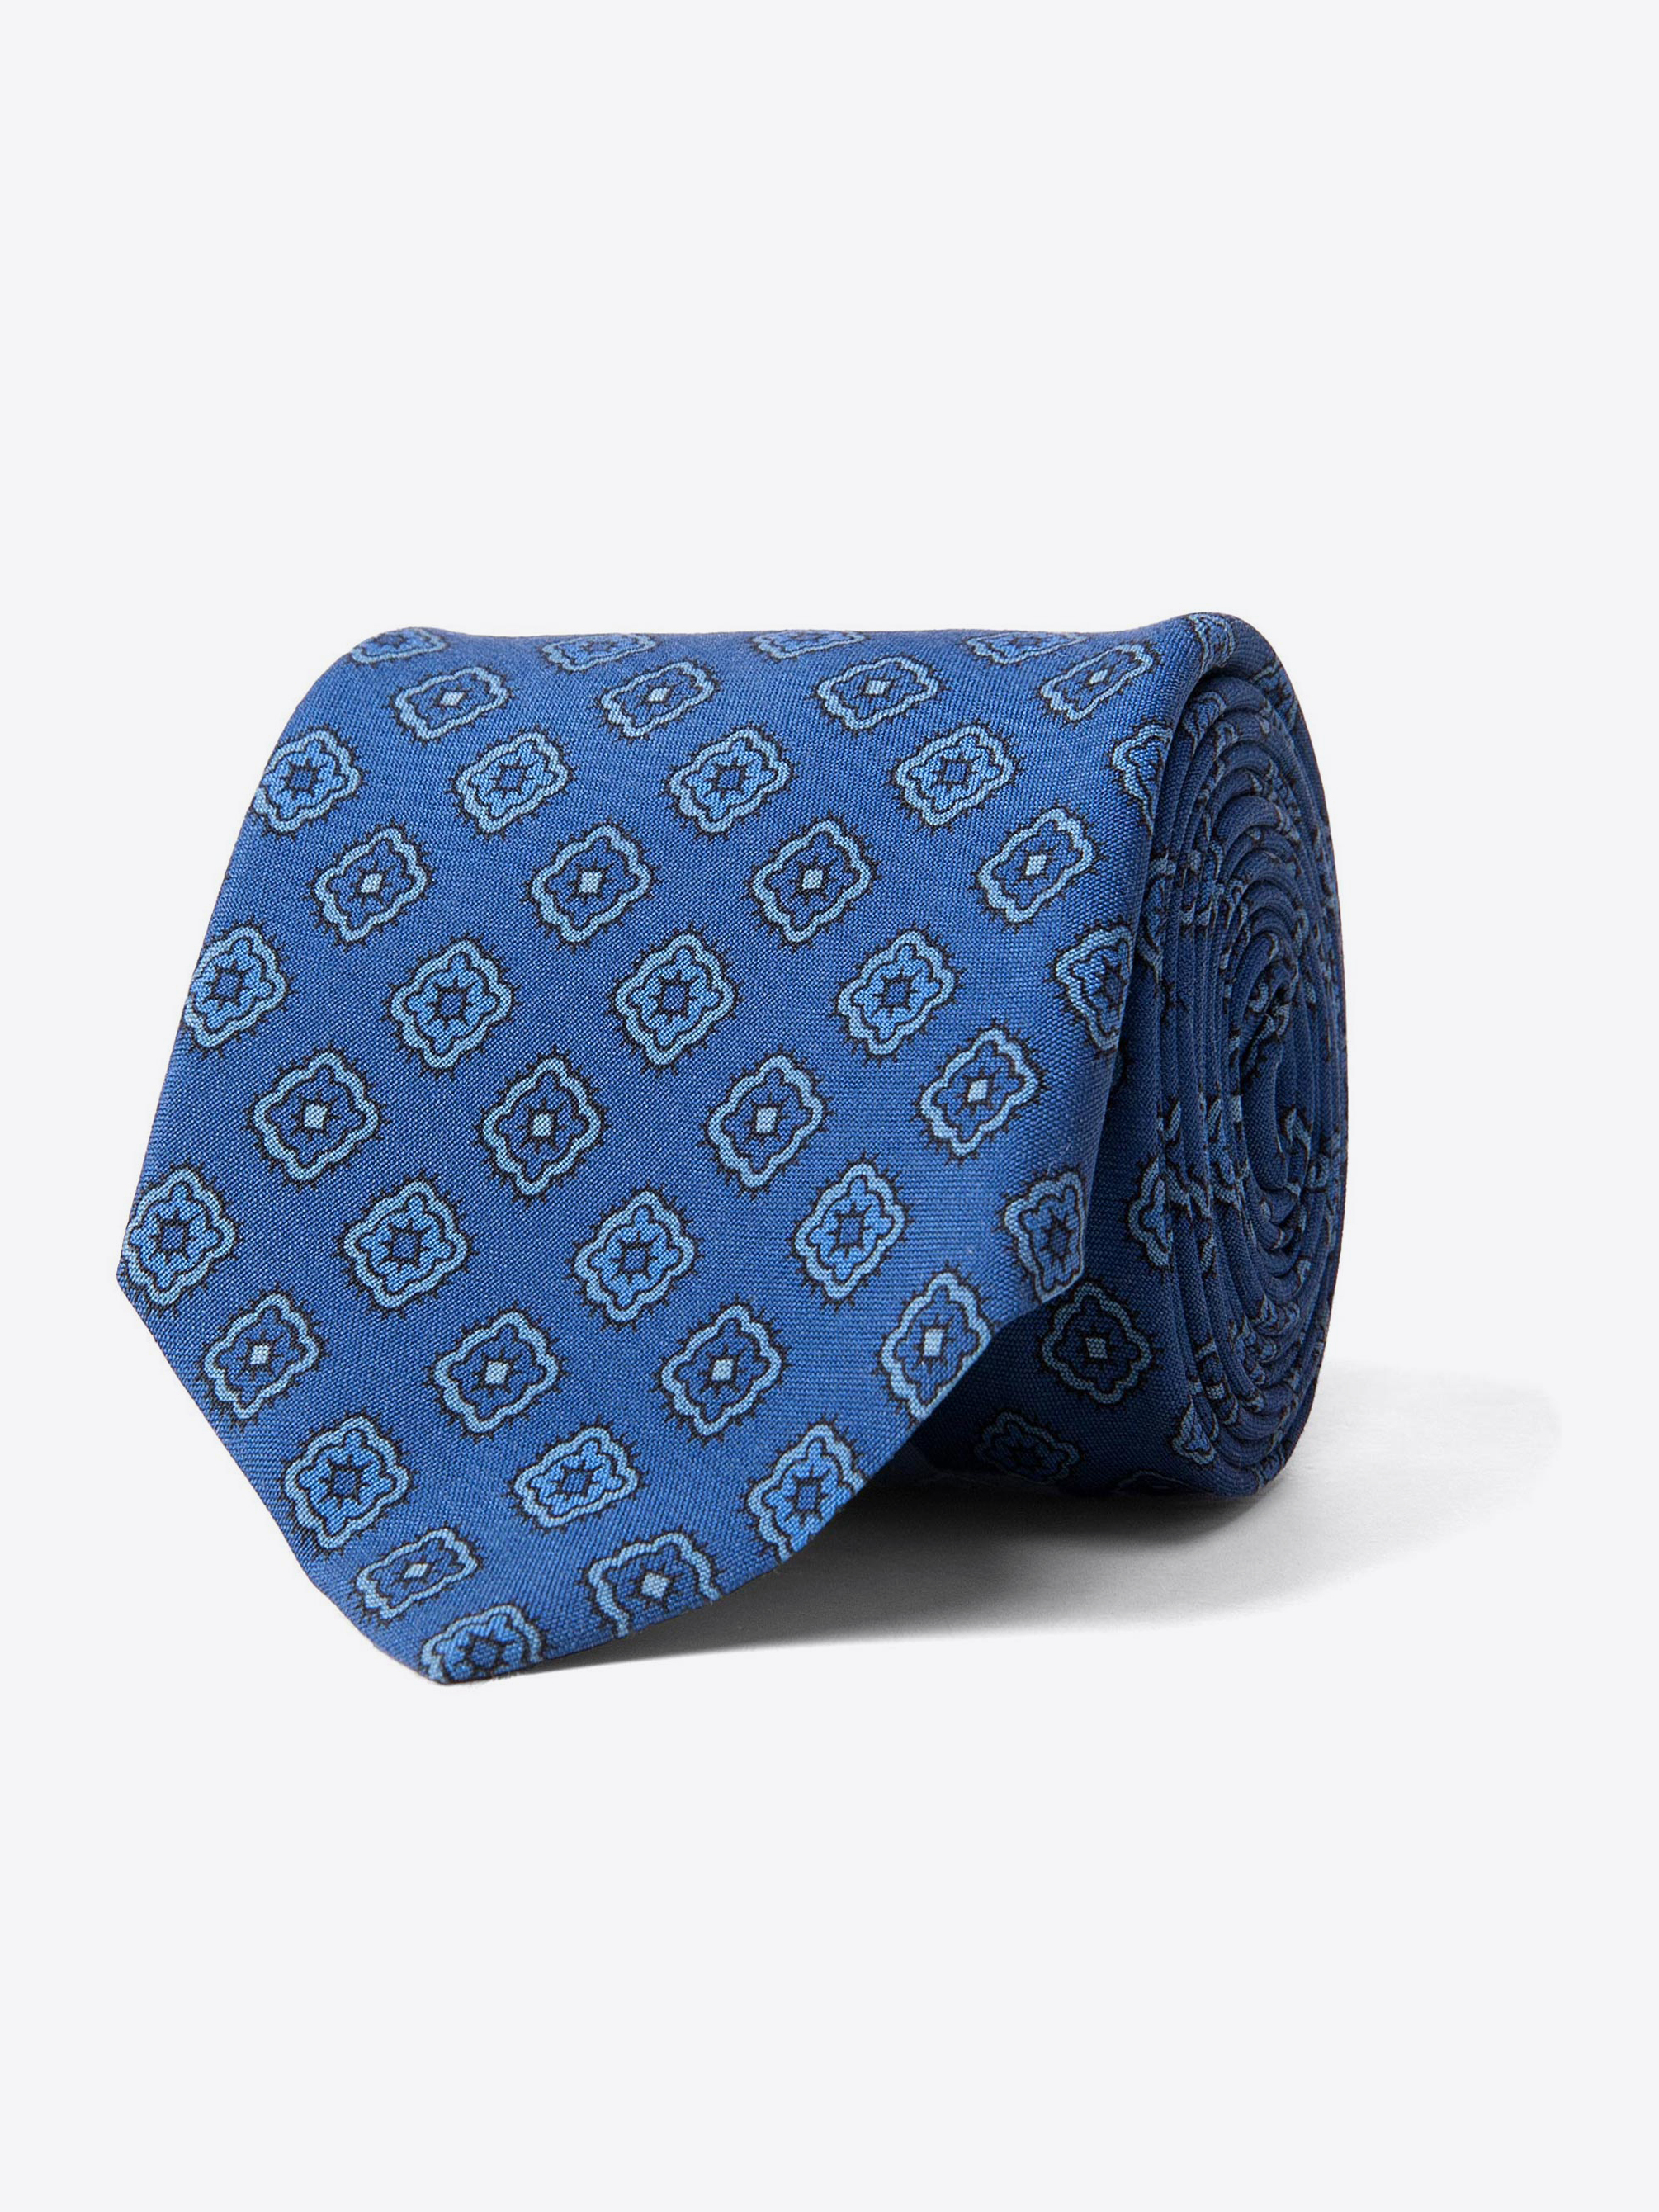 Zoom Image of Ocean Blue Foulard Print Silk Tie